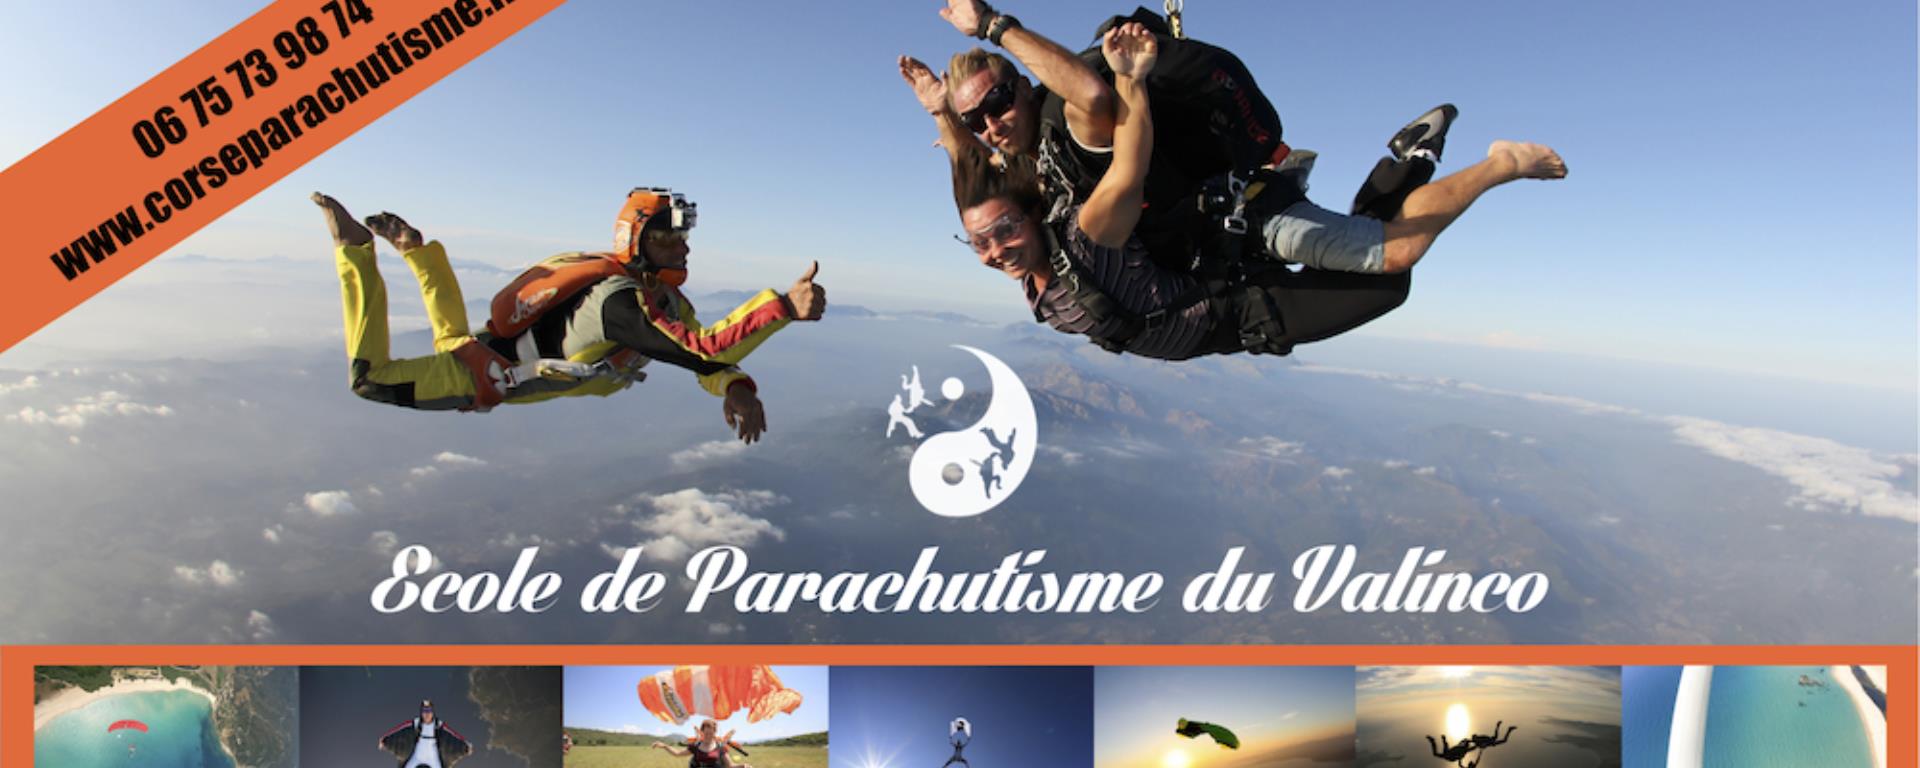 2017- Ecole de Parachutisme du Valinco- saut nc 